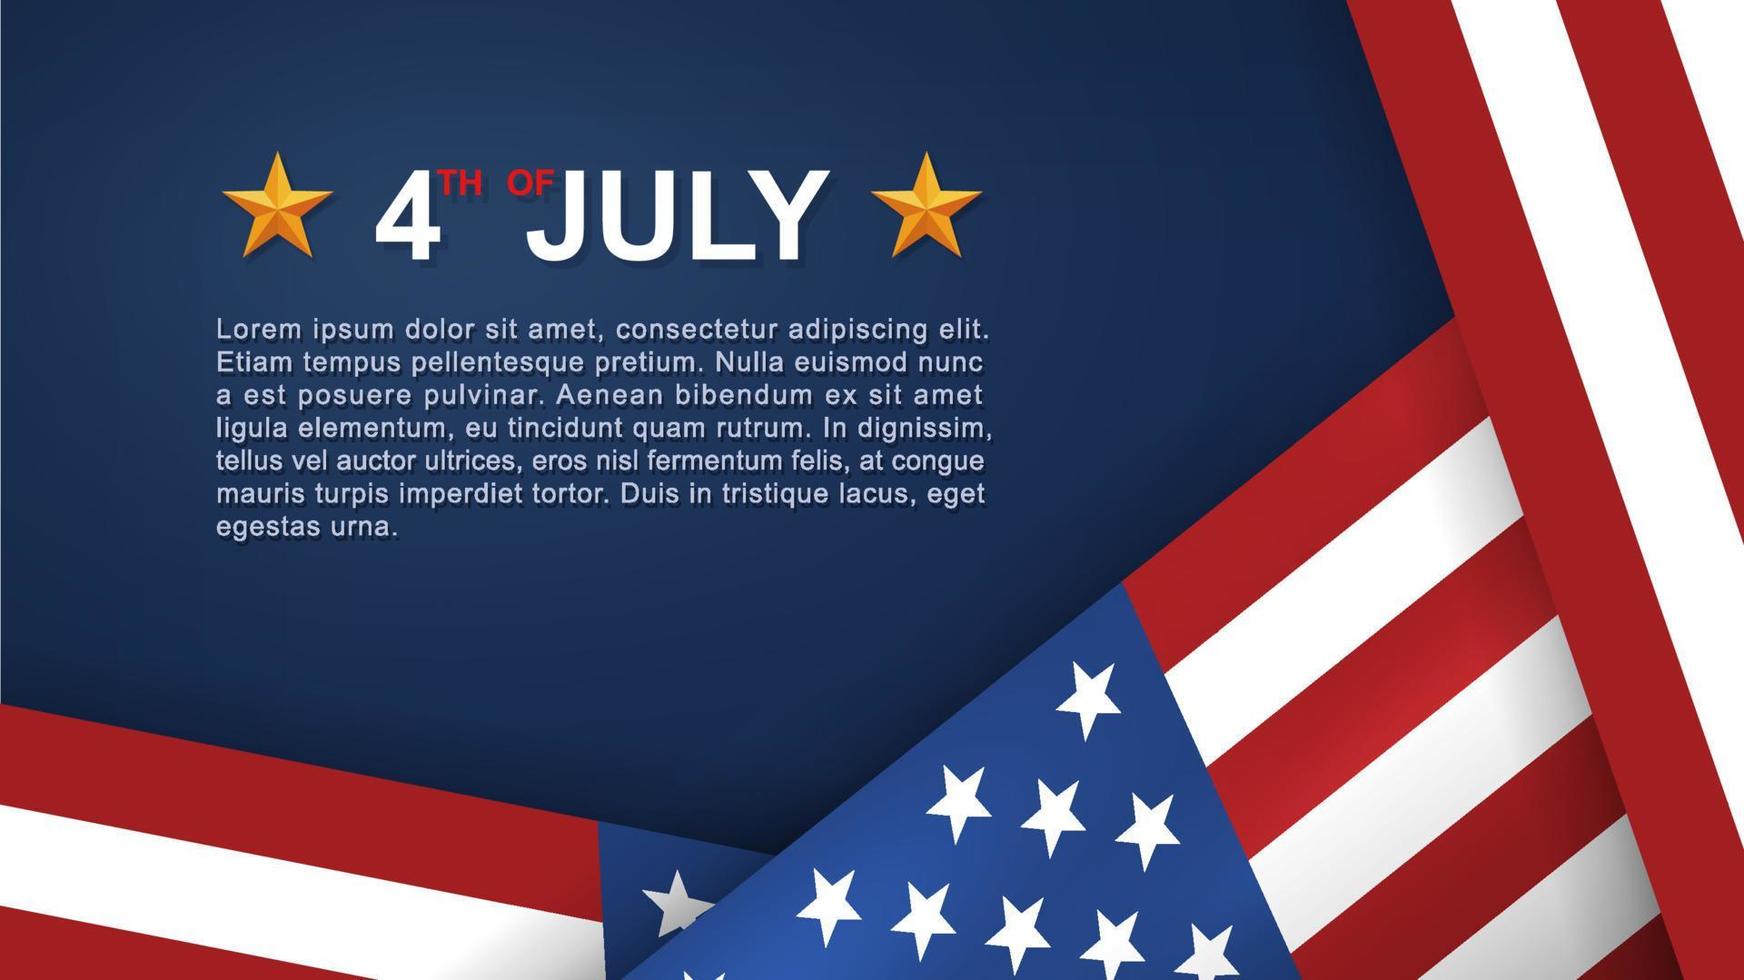 Sfondo del 4 luglio per la festa dell'indipendenza degli stati uniti d'america con sfondo blu e bandiera americana. illustrazione vettoriale. vettore